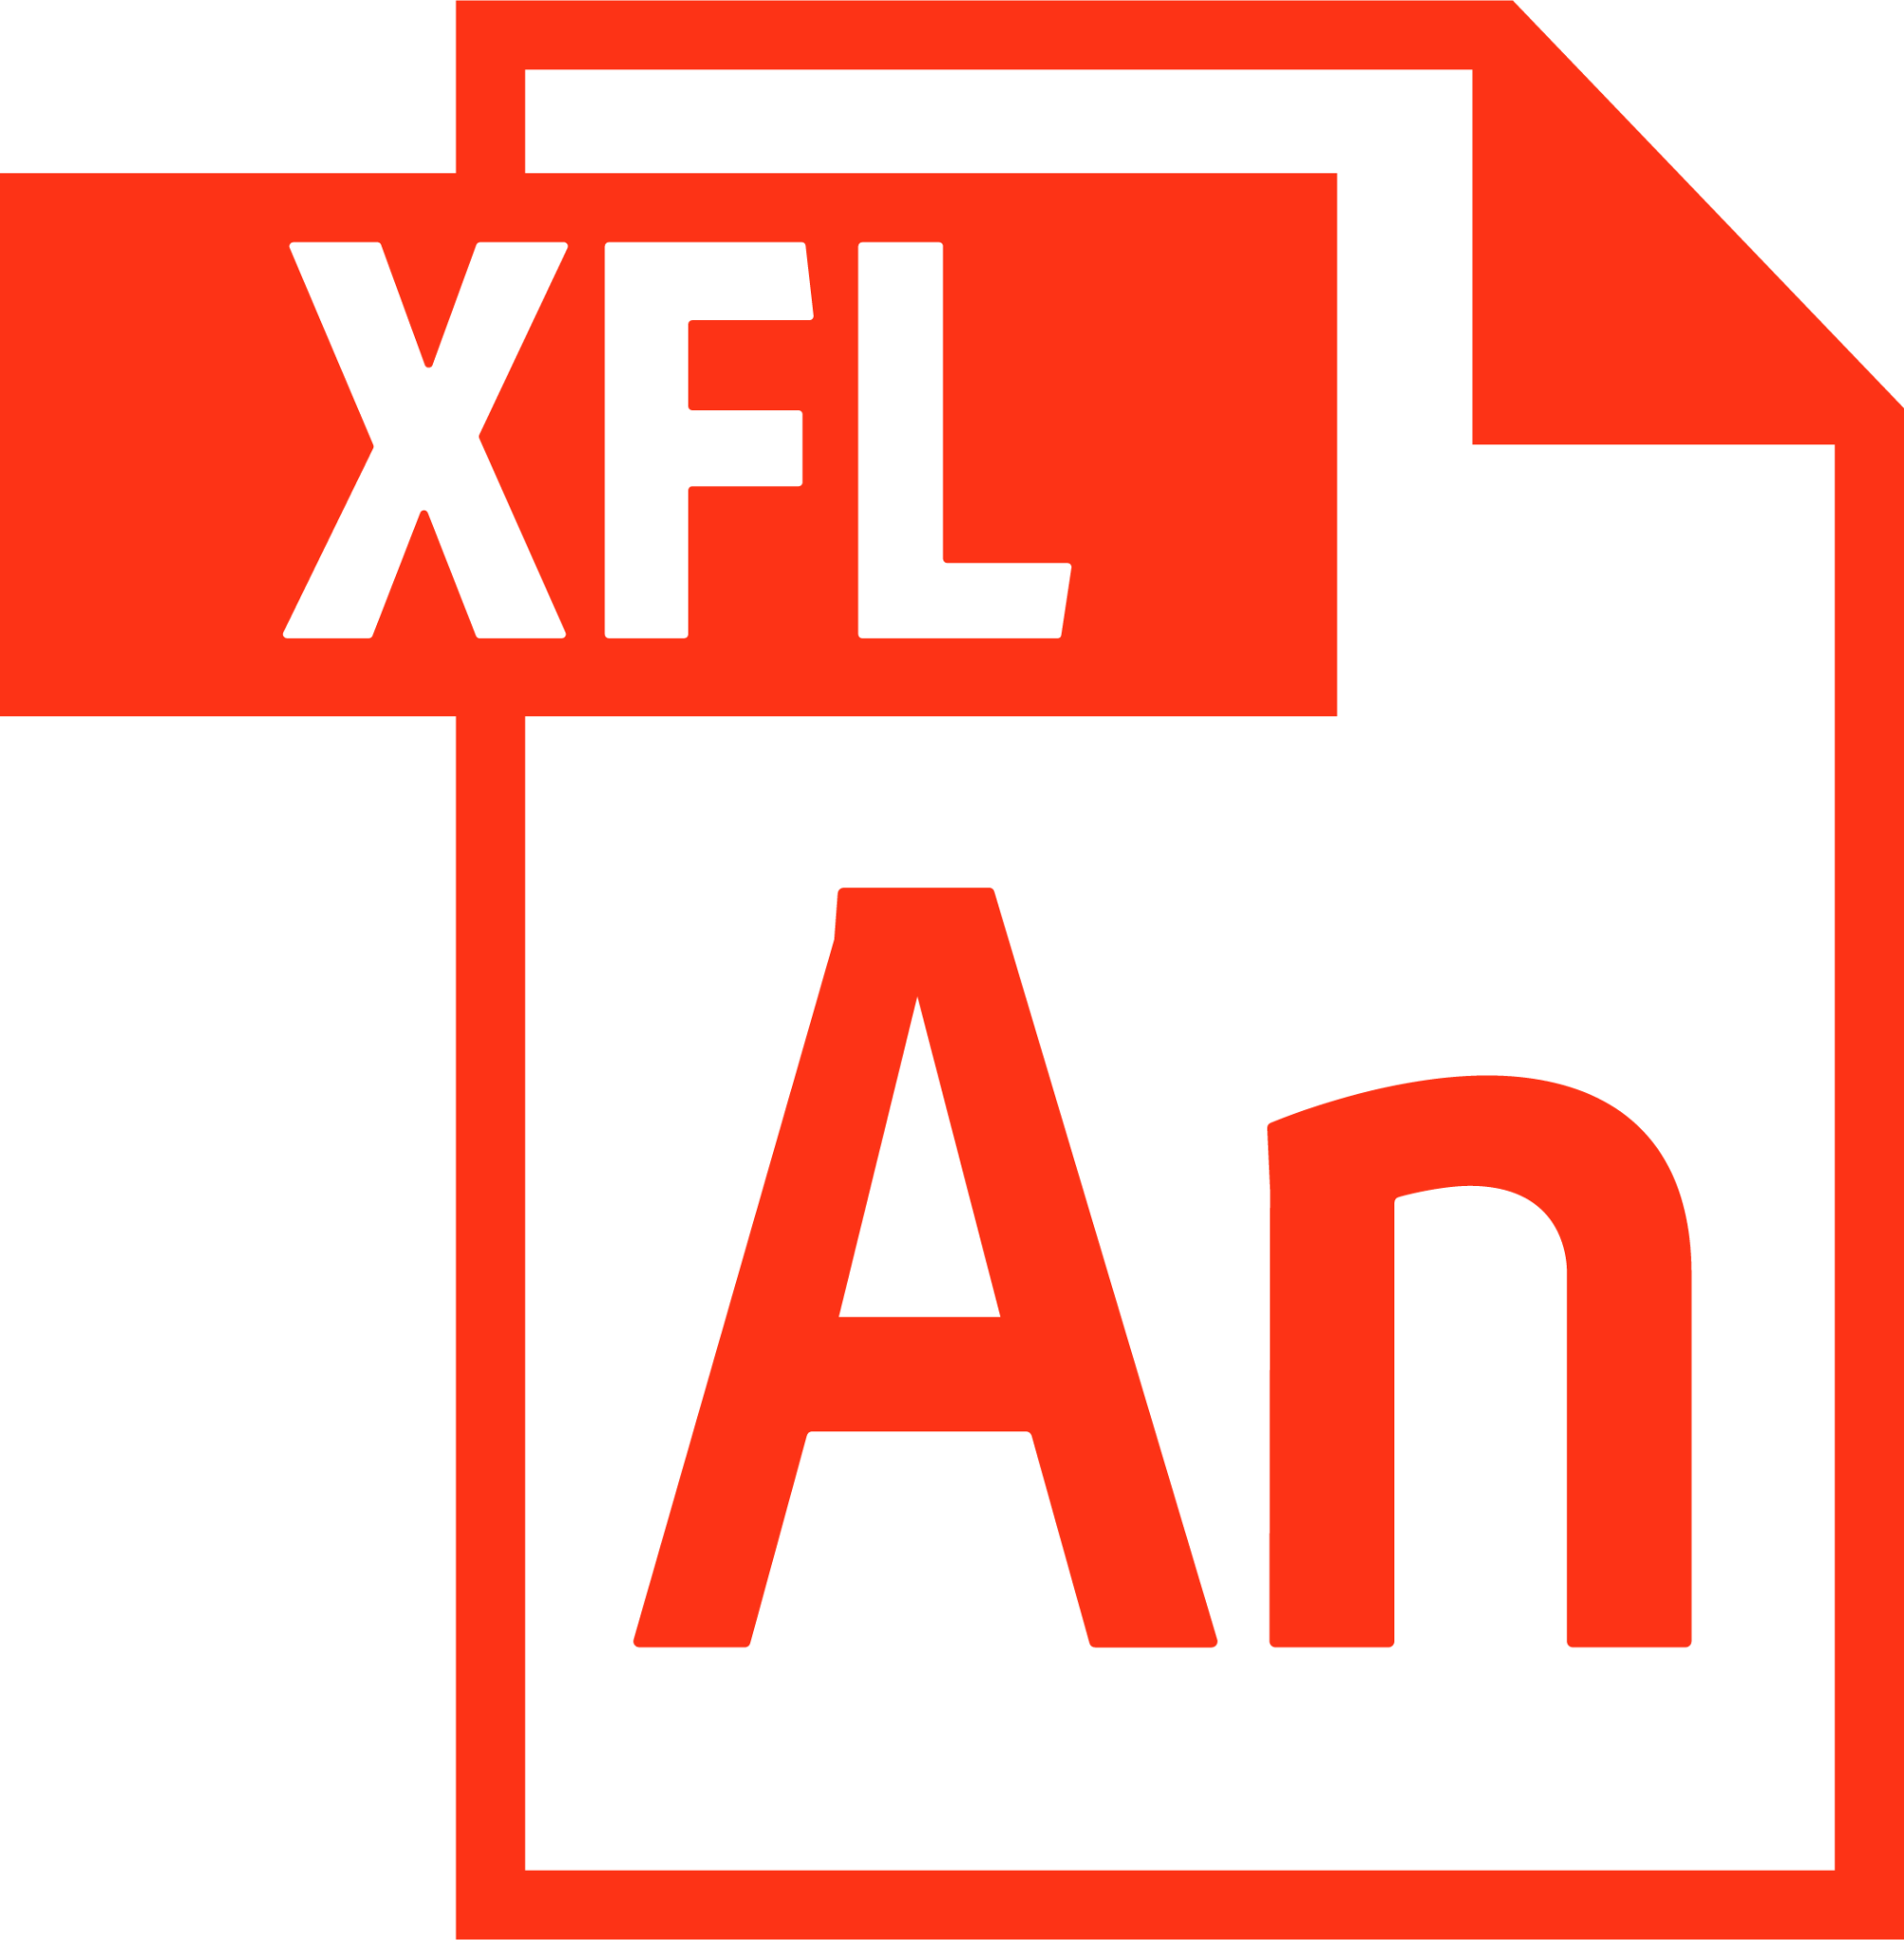 file type xfl icon